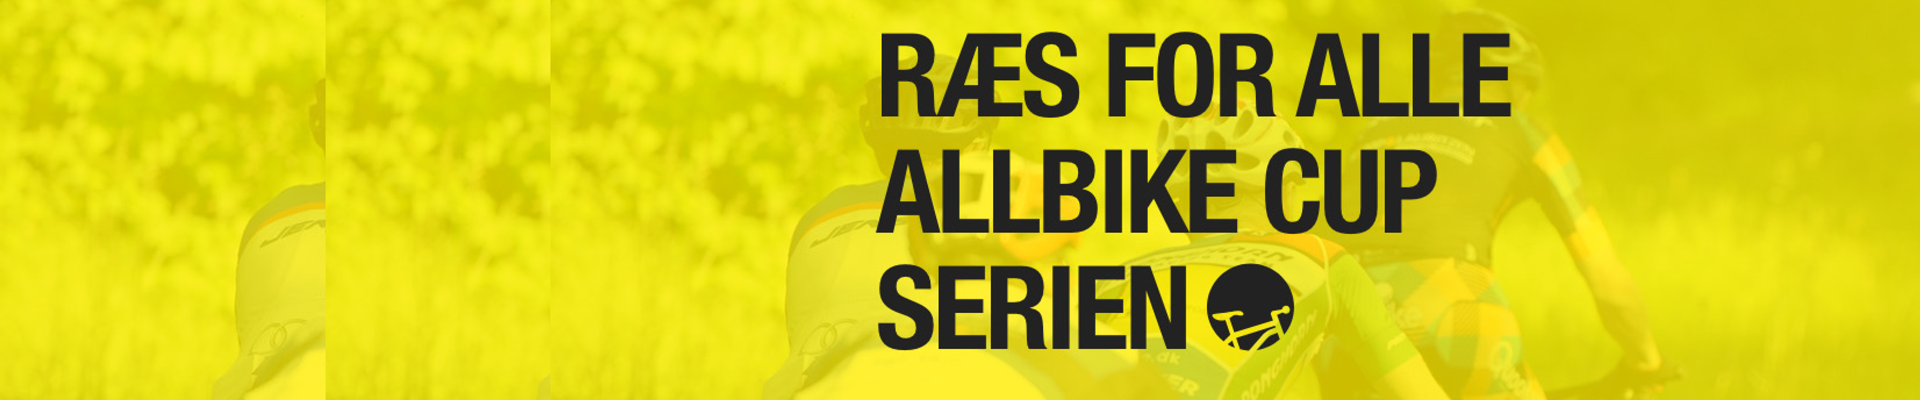 Albike Cuppen 2018 - #10 Randers (Finale)